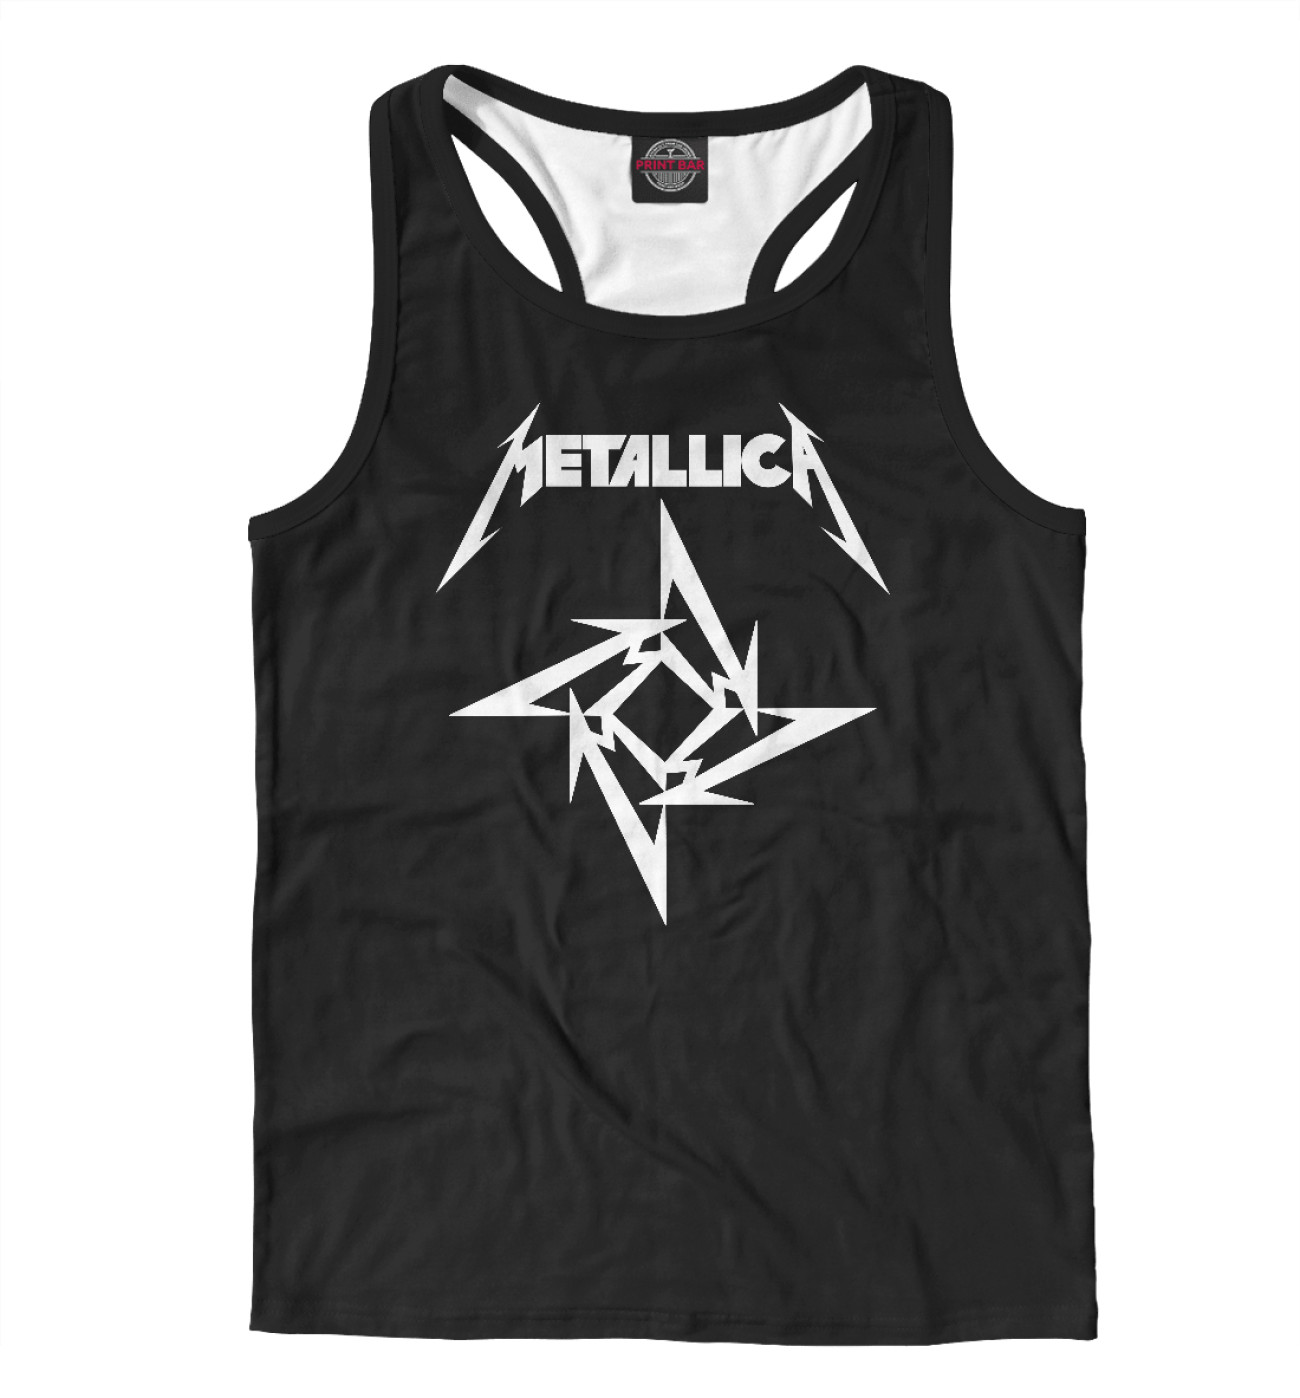 Мужская Борцовка Metallica, артикул: MET-225752-mayb-2